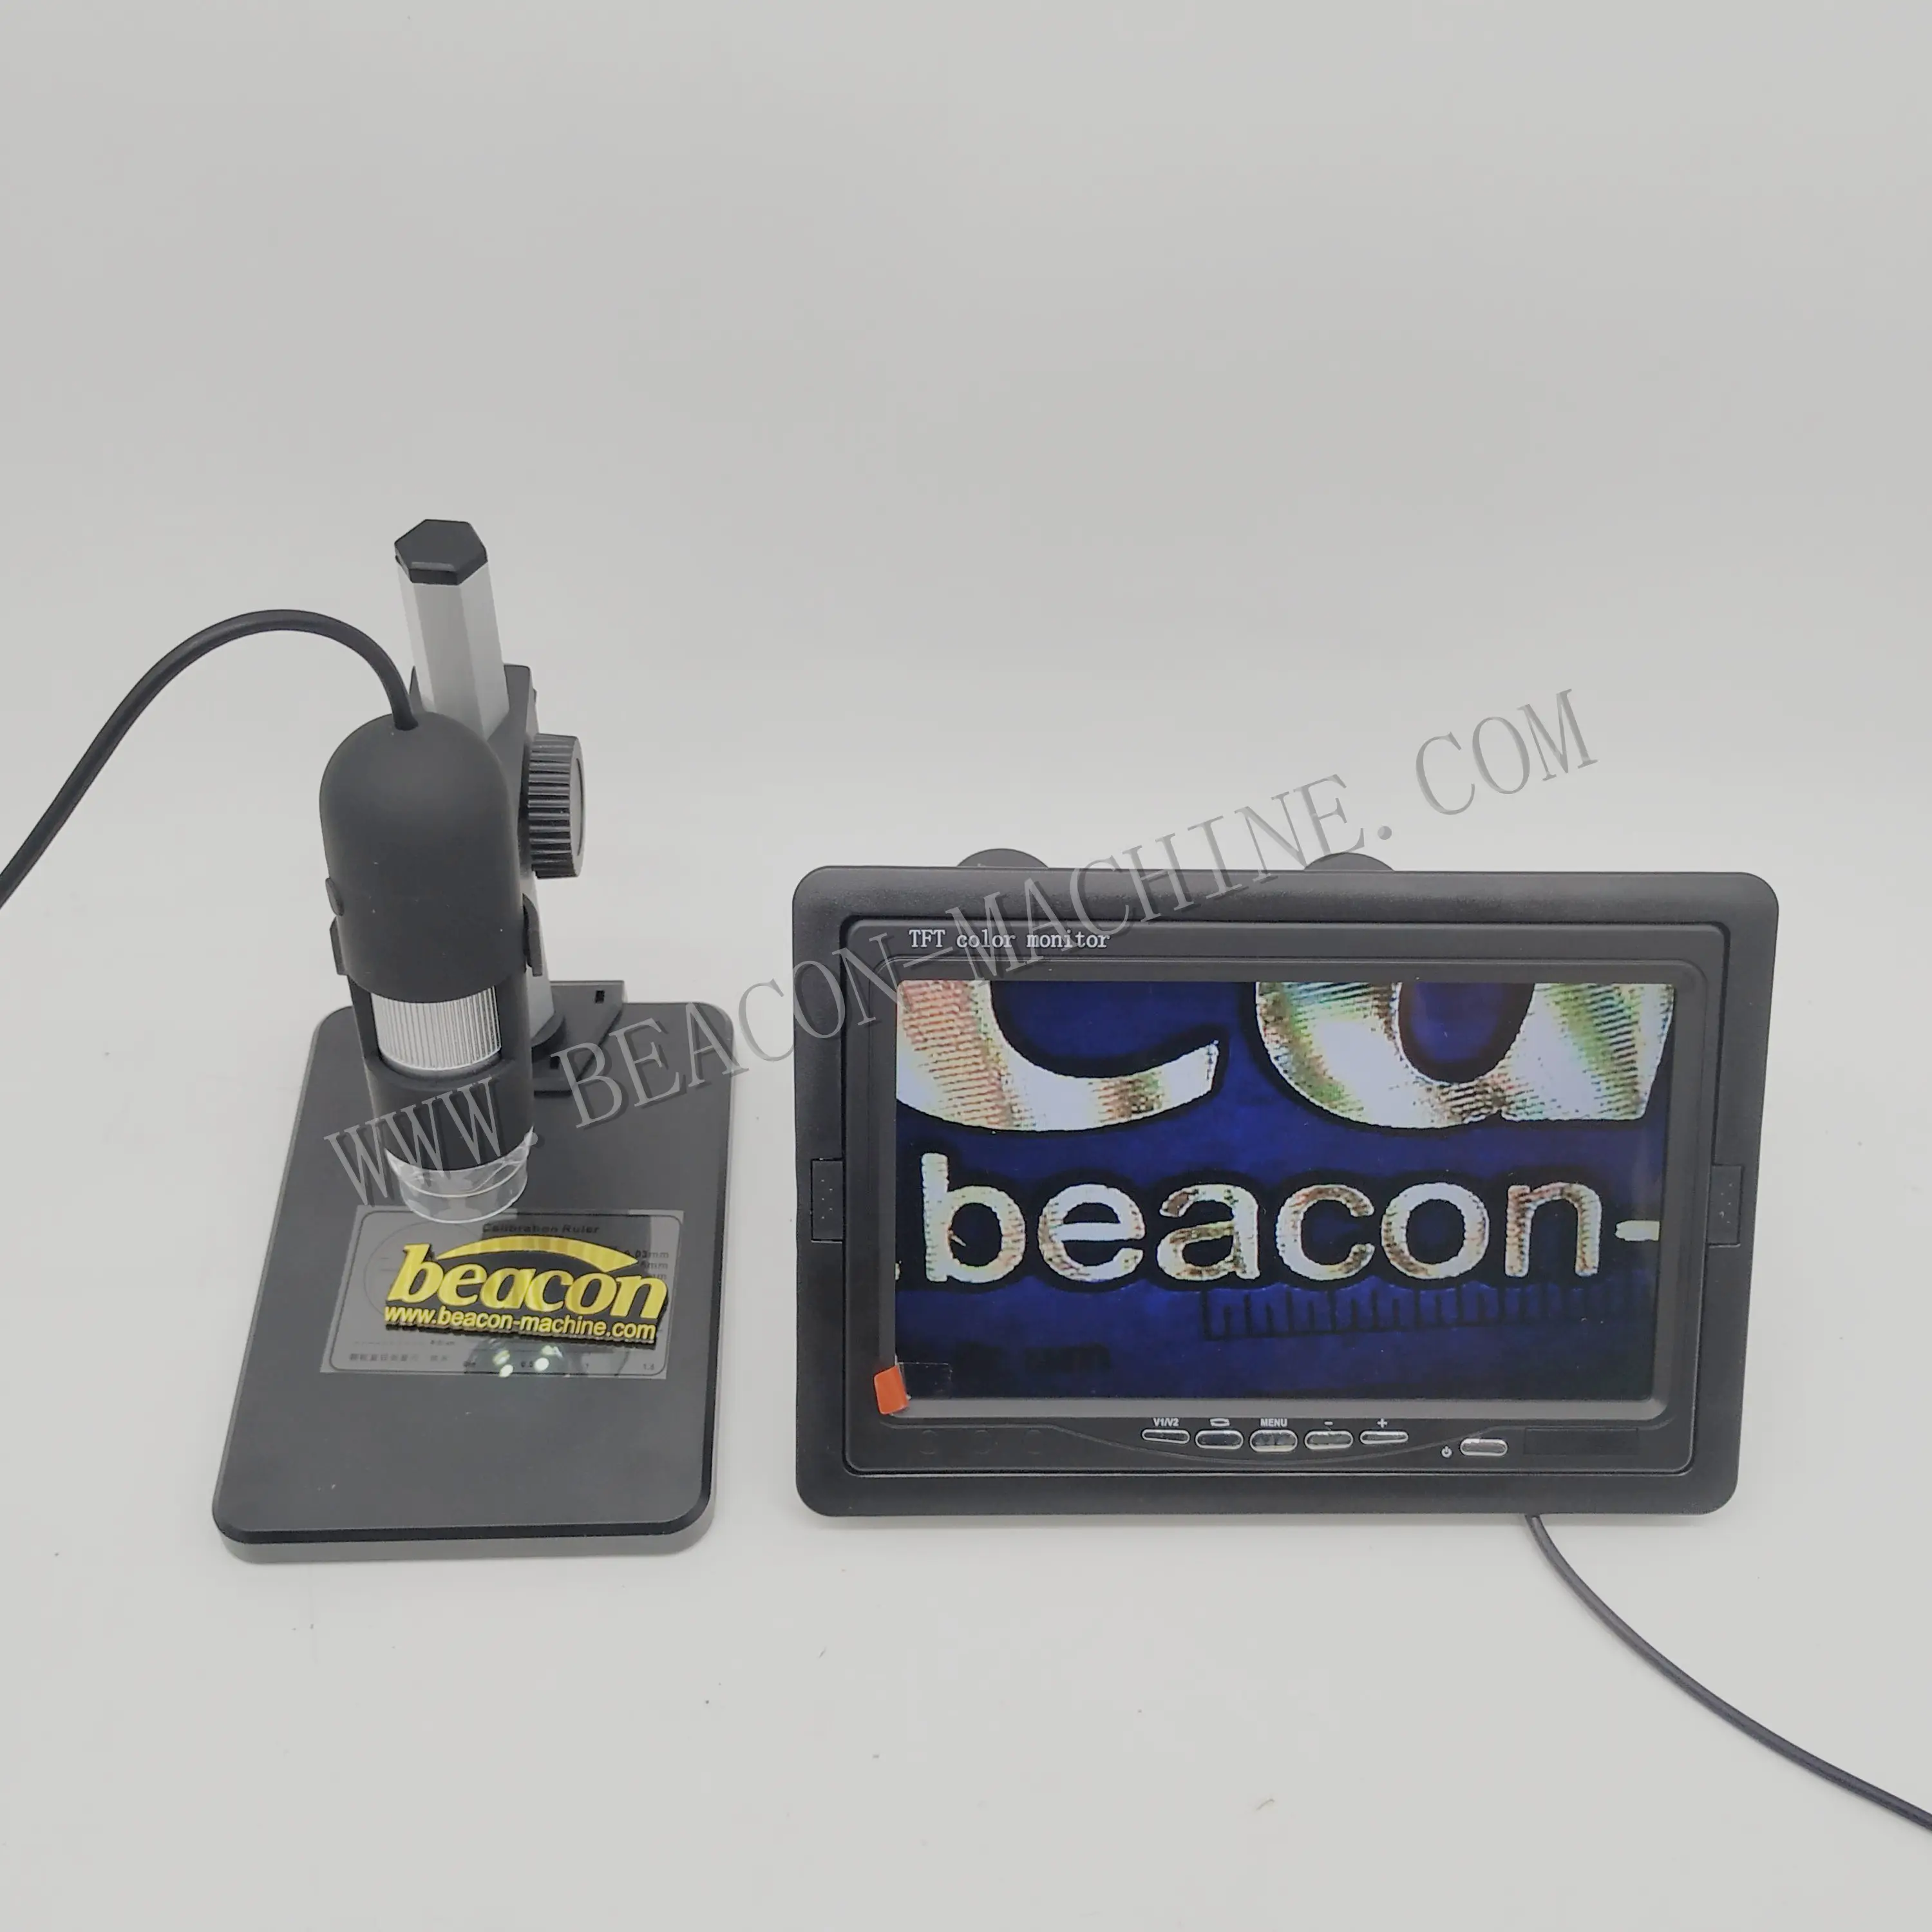 비컨 디젤 도구 전자 디지털 현미경